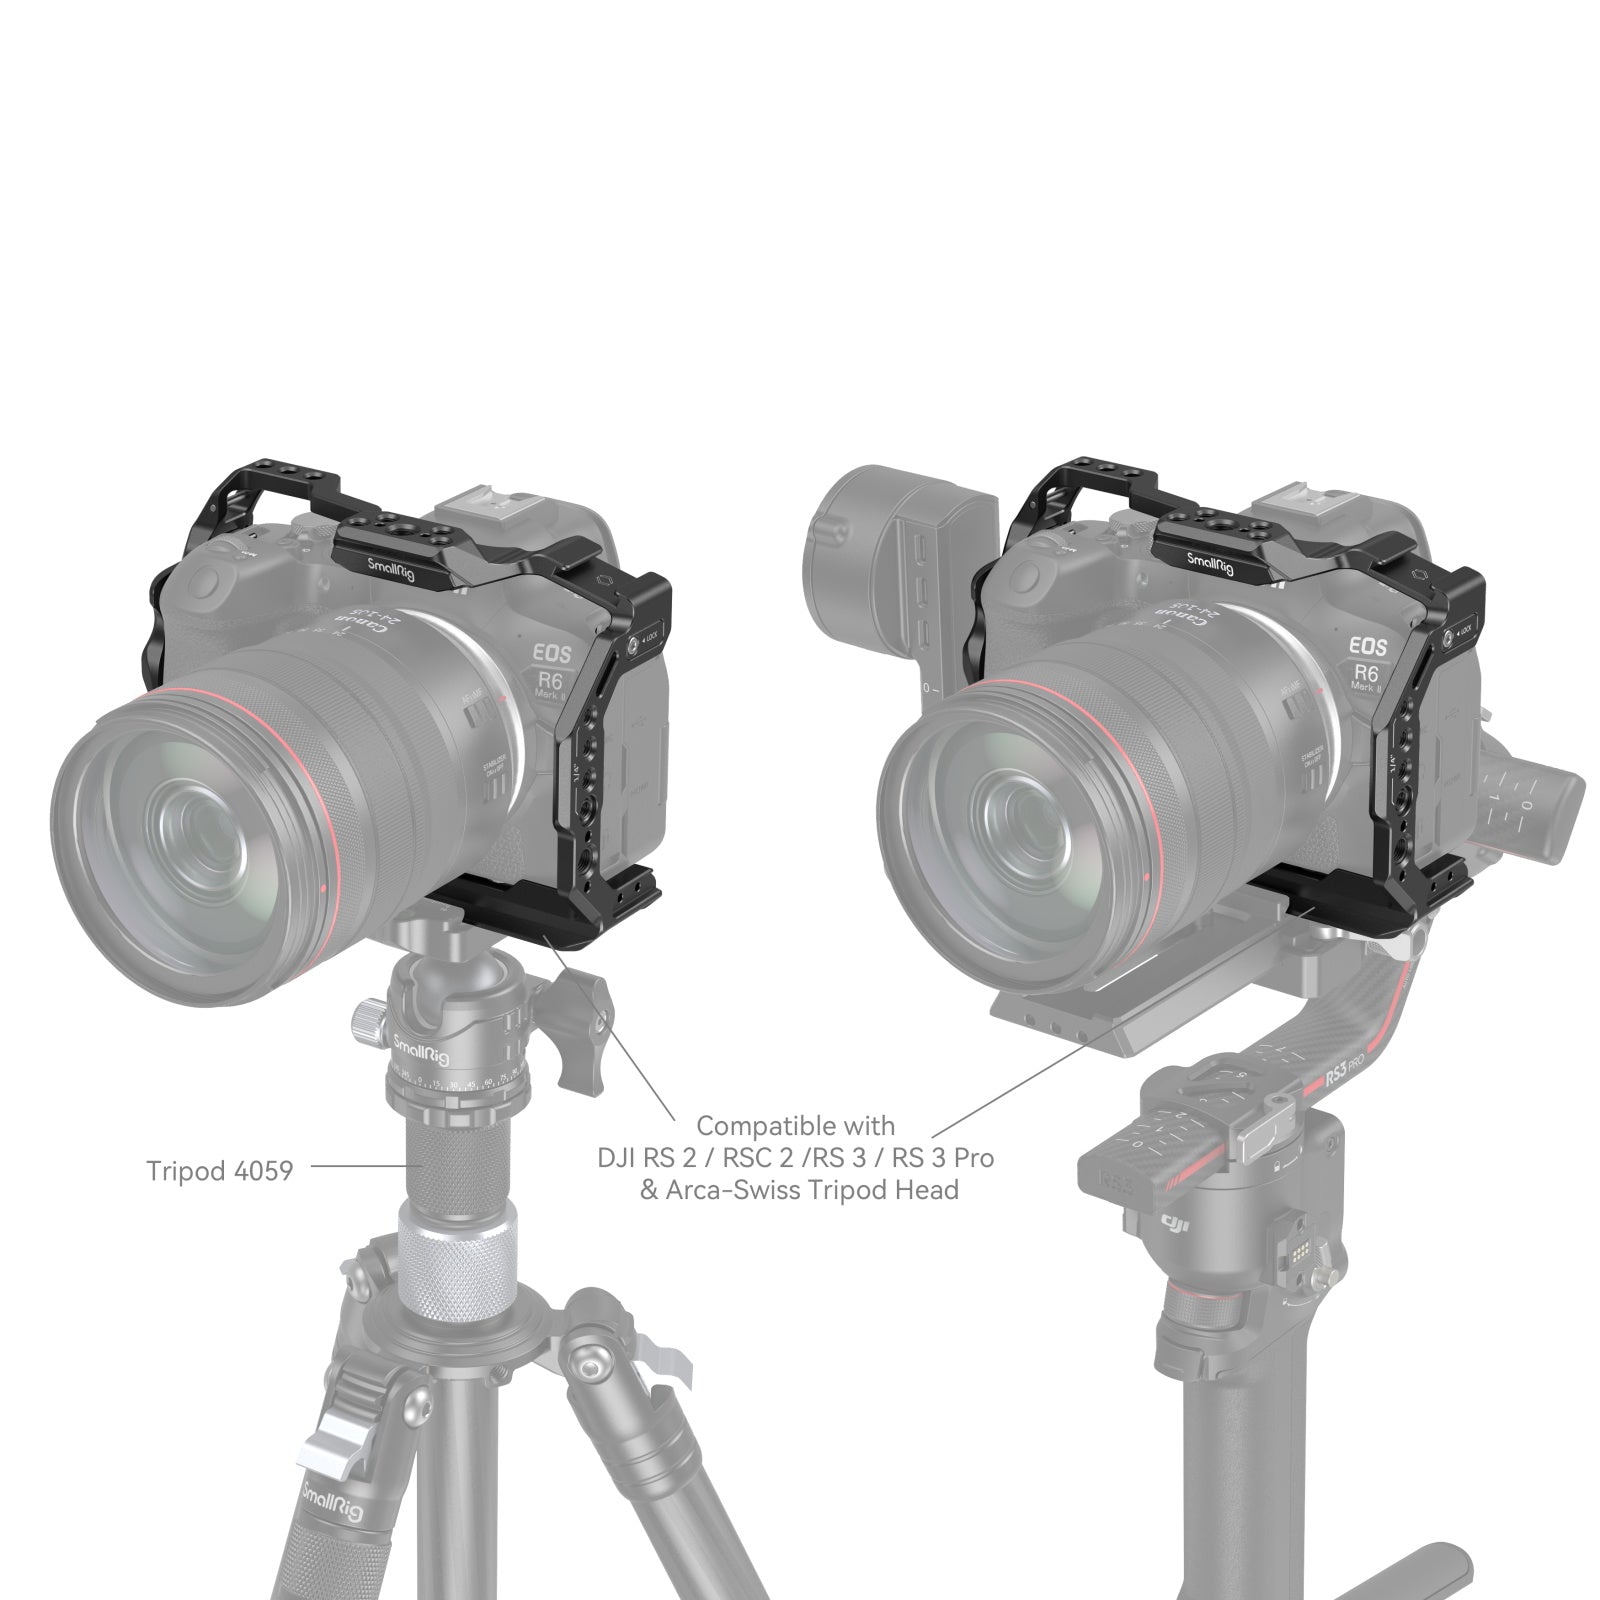 Smallrig Camera Cage per Canon EOS R6 Mark II - Cine Sud è da 47 anni sul mercato! 1127155 4159